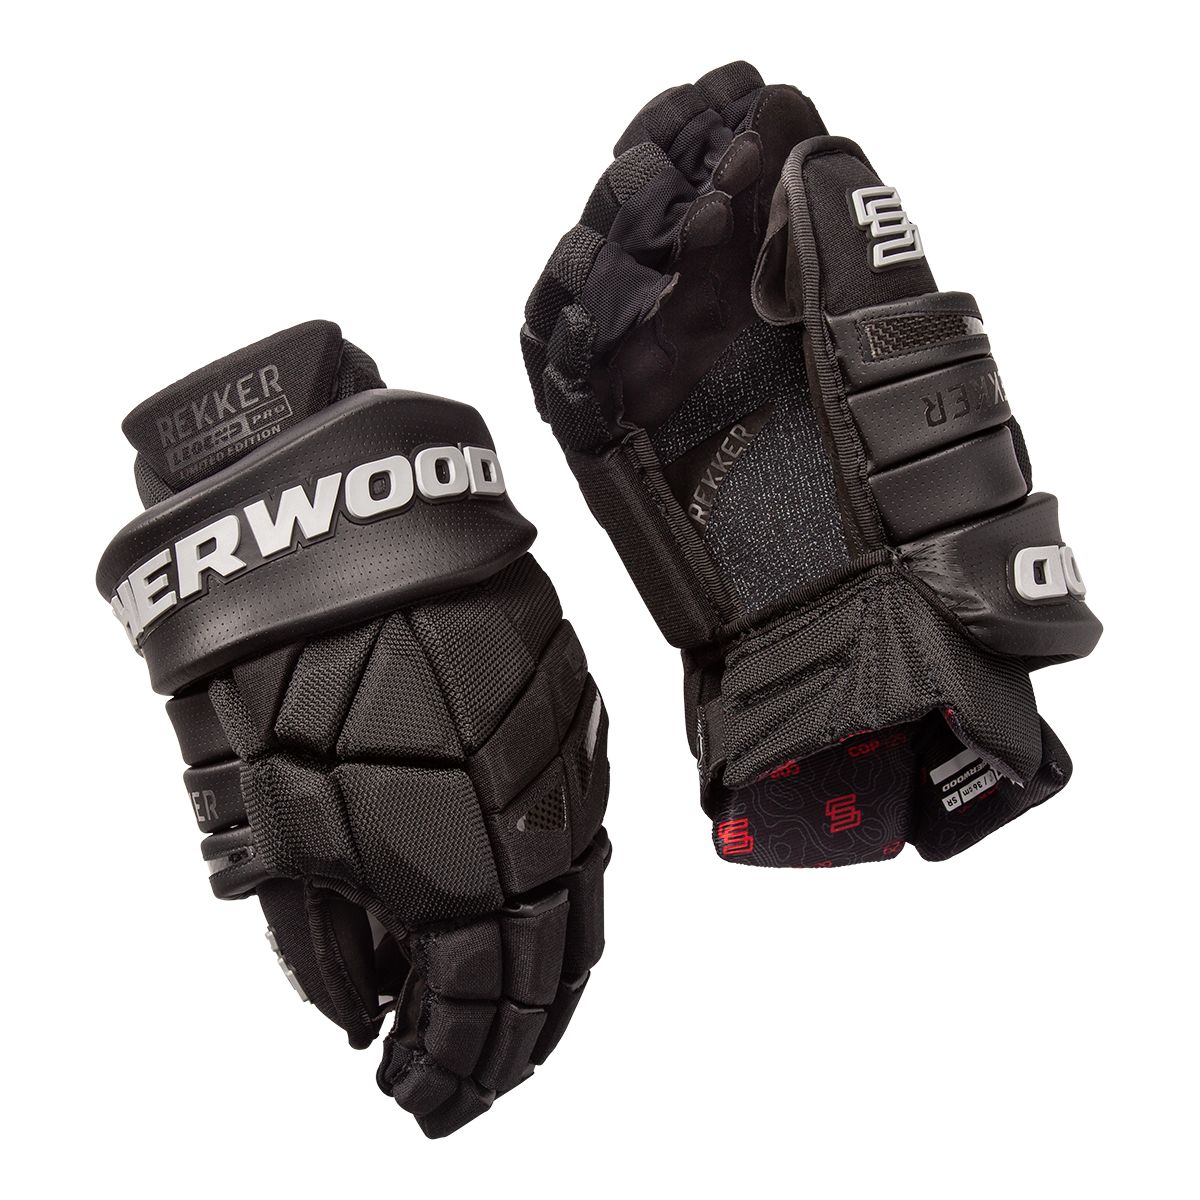 Image of Sherwood Rekker Legend Pro LE Senior Hockey Gloves